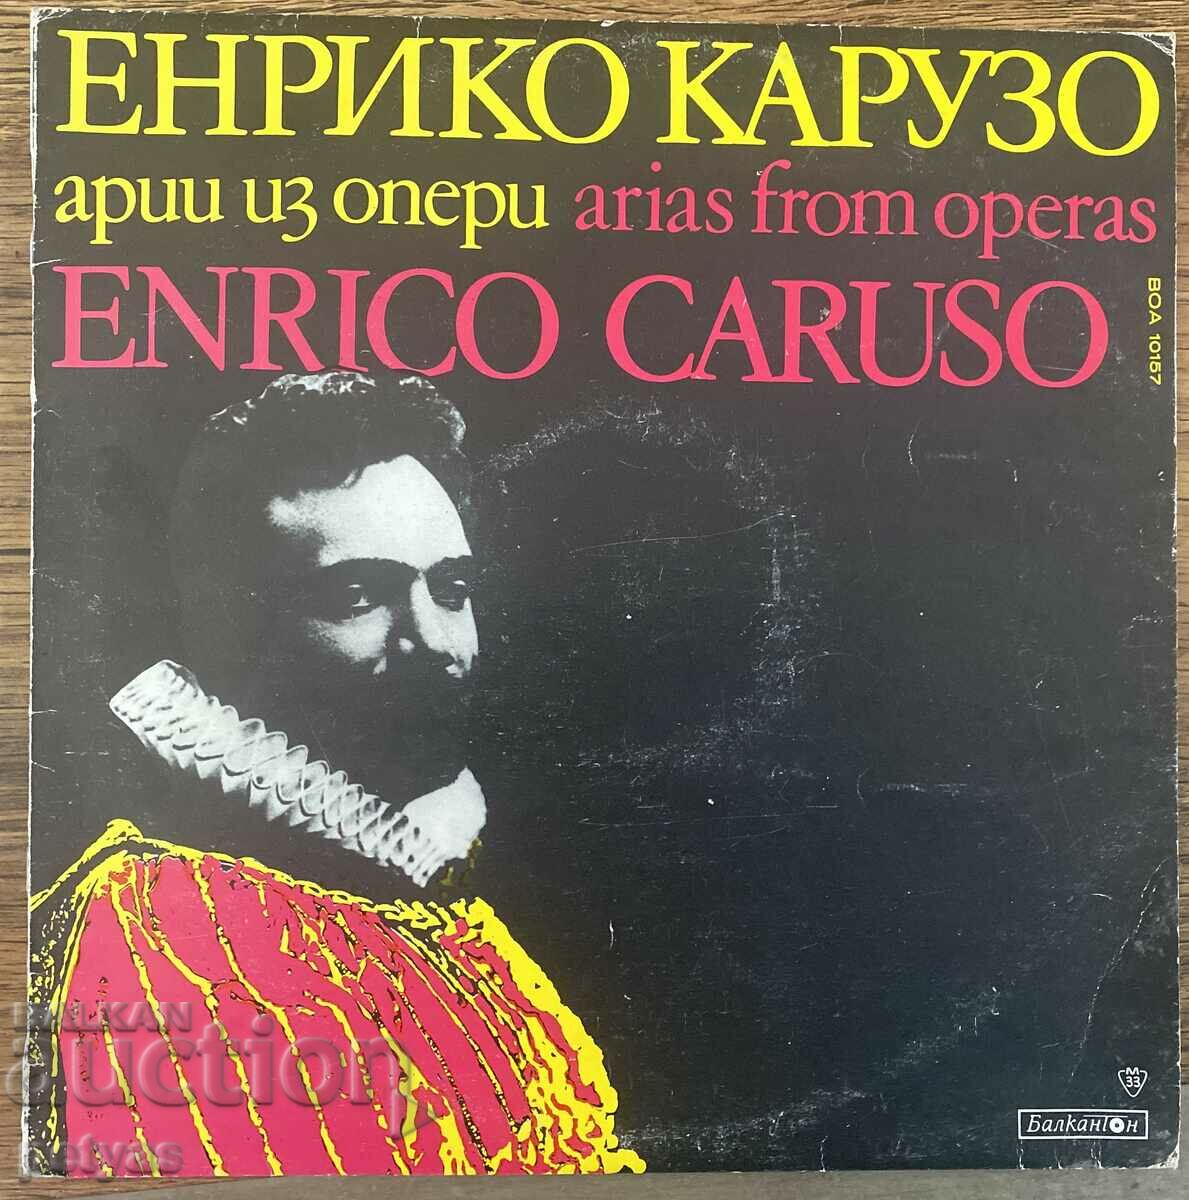 Enrico Caruso - Arias From Operas Enrico Caruso